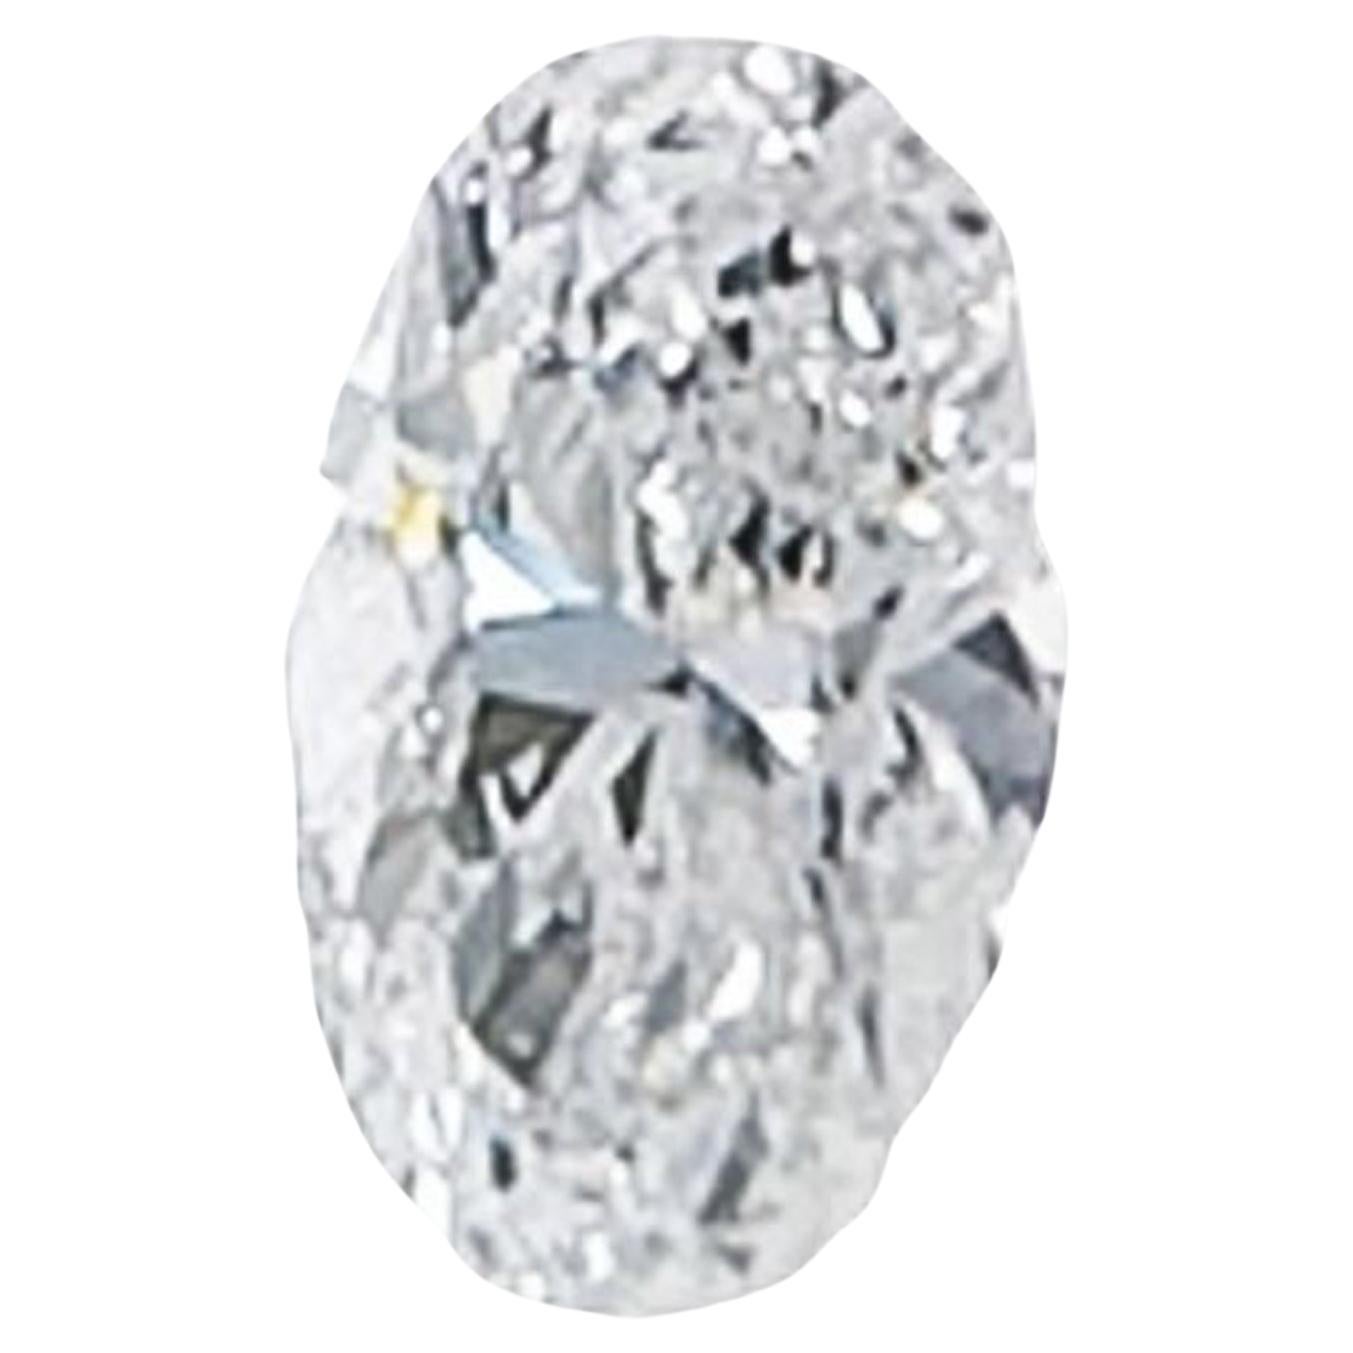 Diamant ovale de 1.07 carats certifié par le GIA